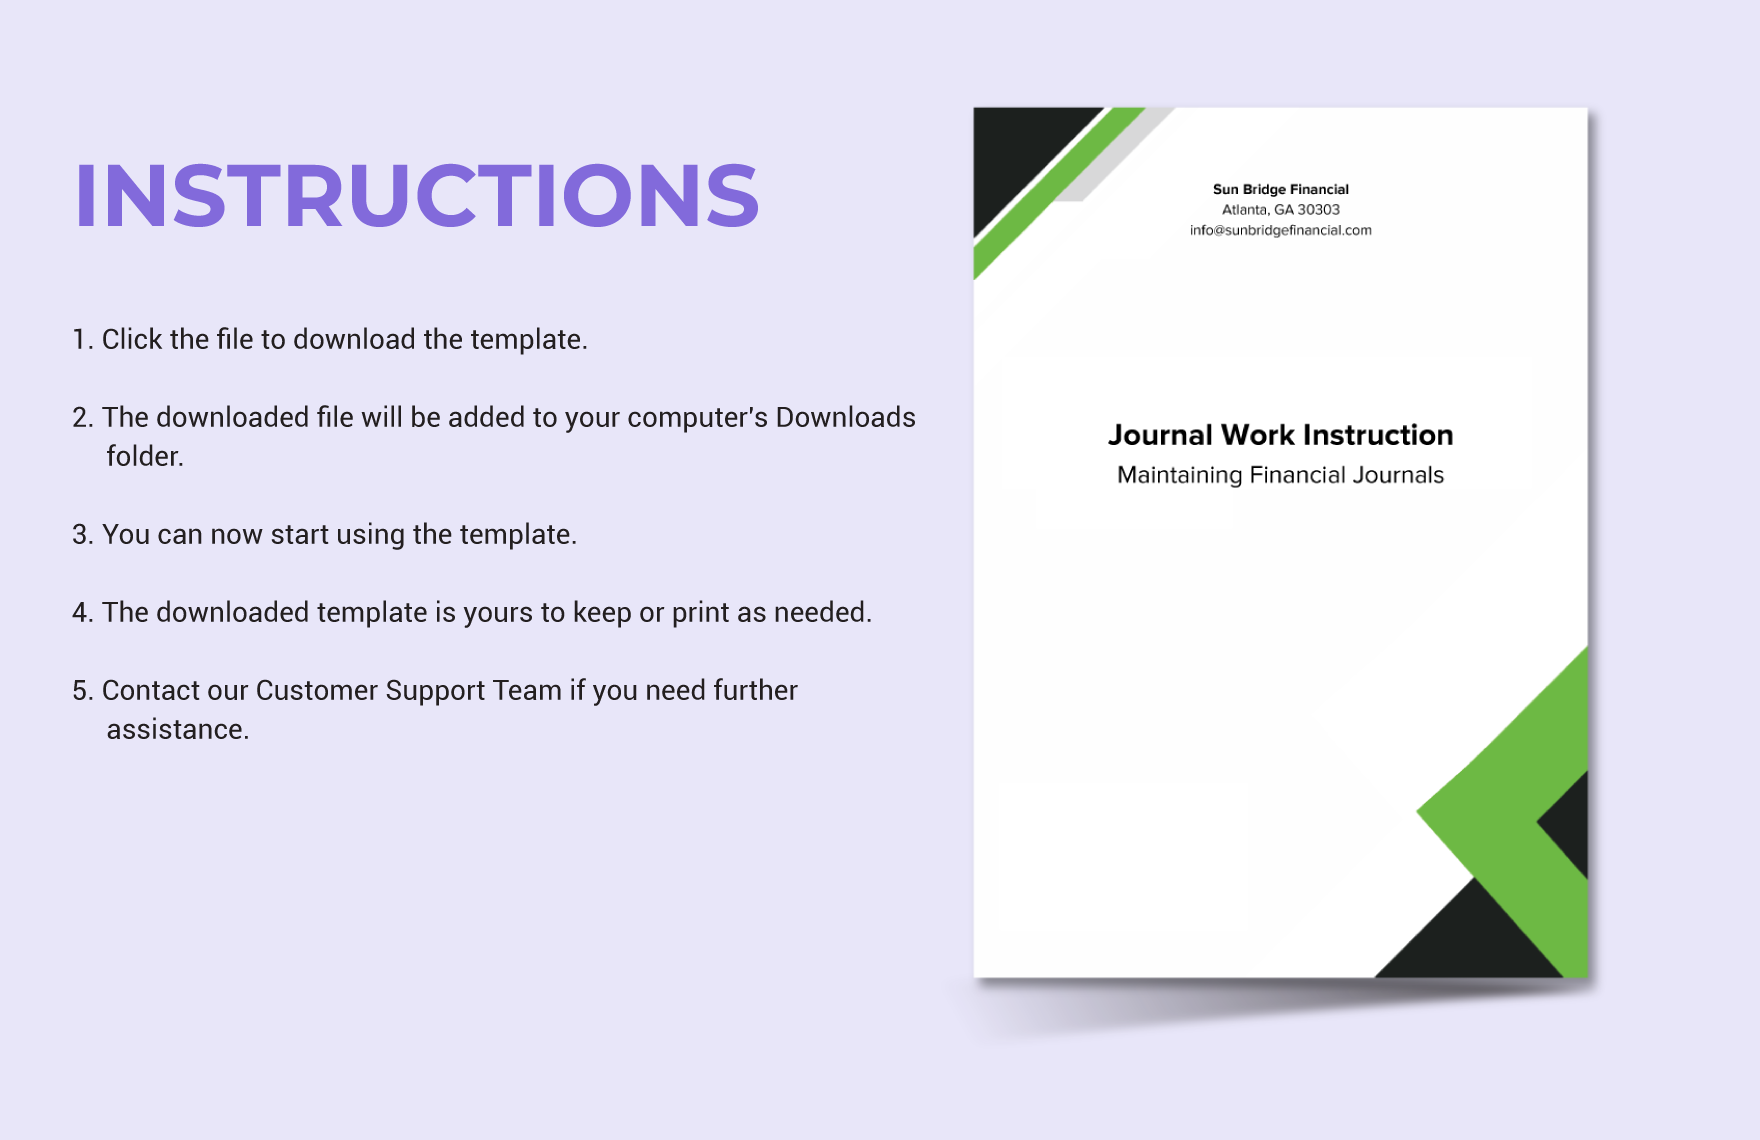 Journal Work Instruction Template